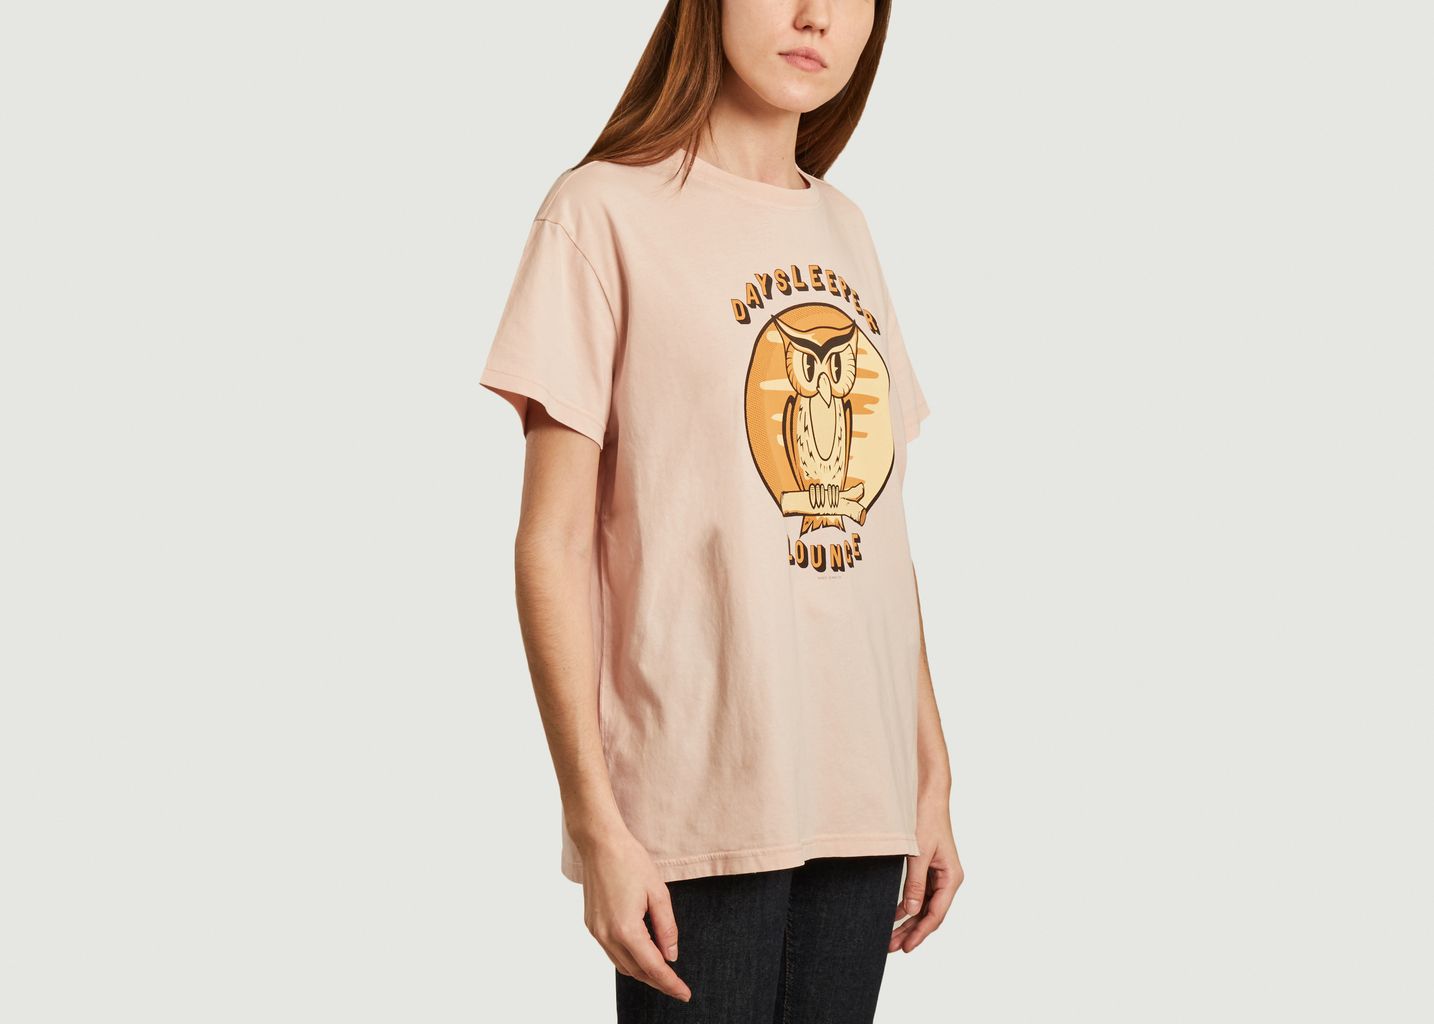 Tina T-shirt - Nudie Jeans